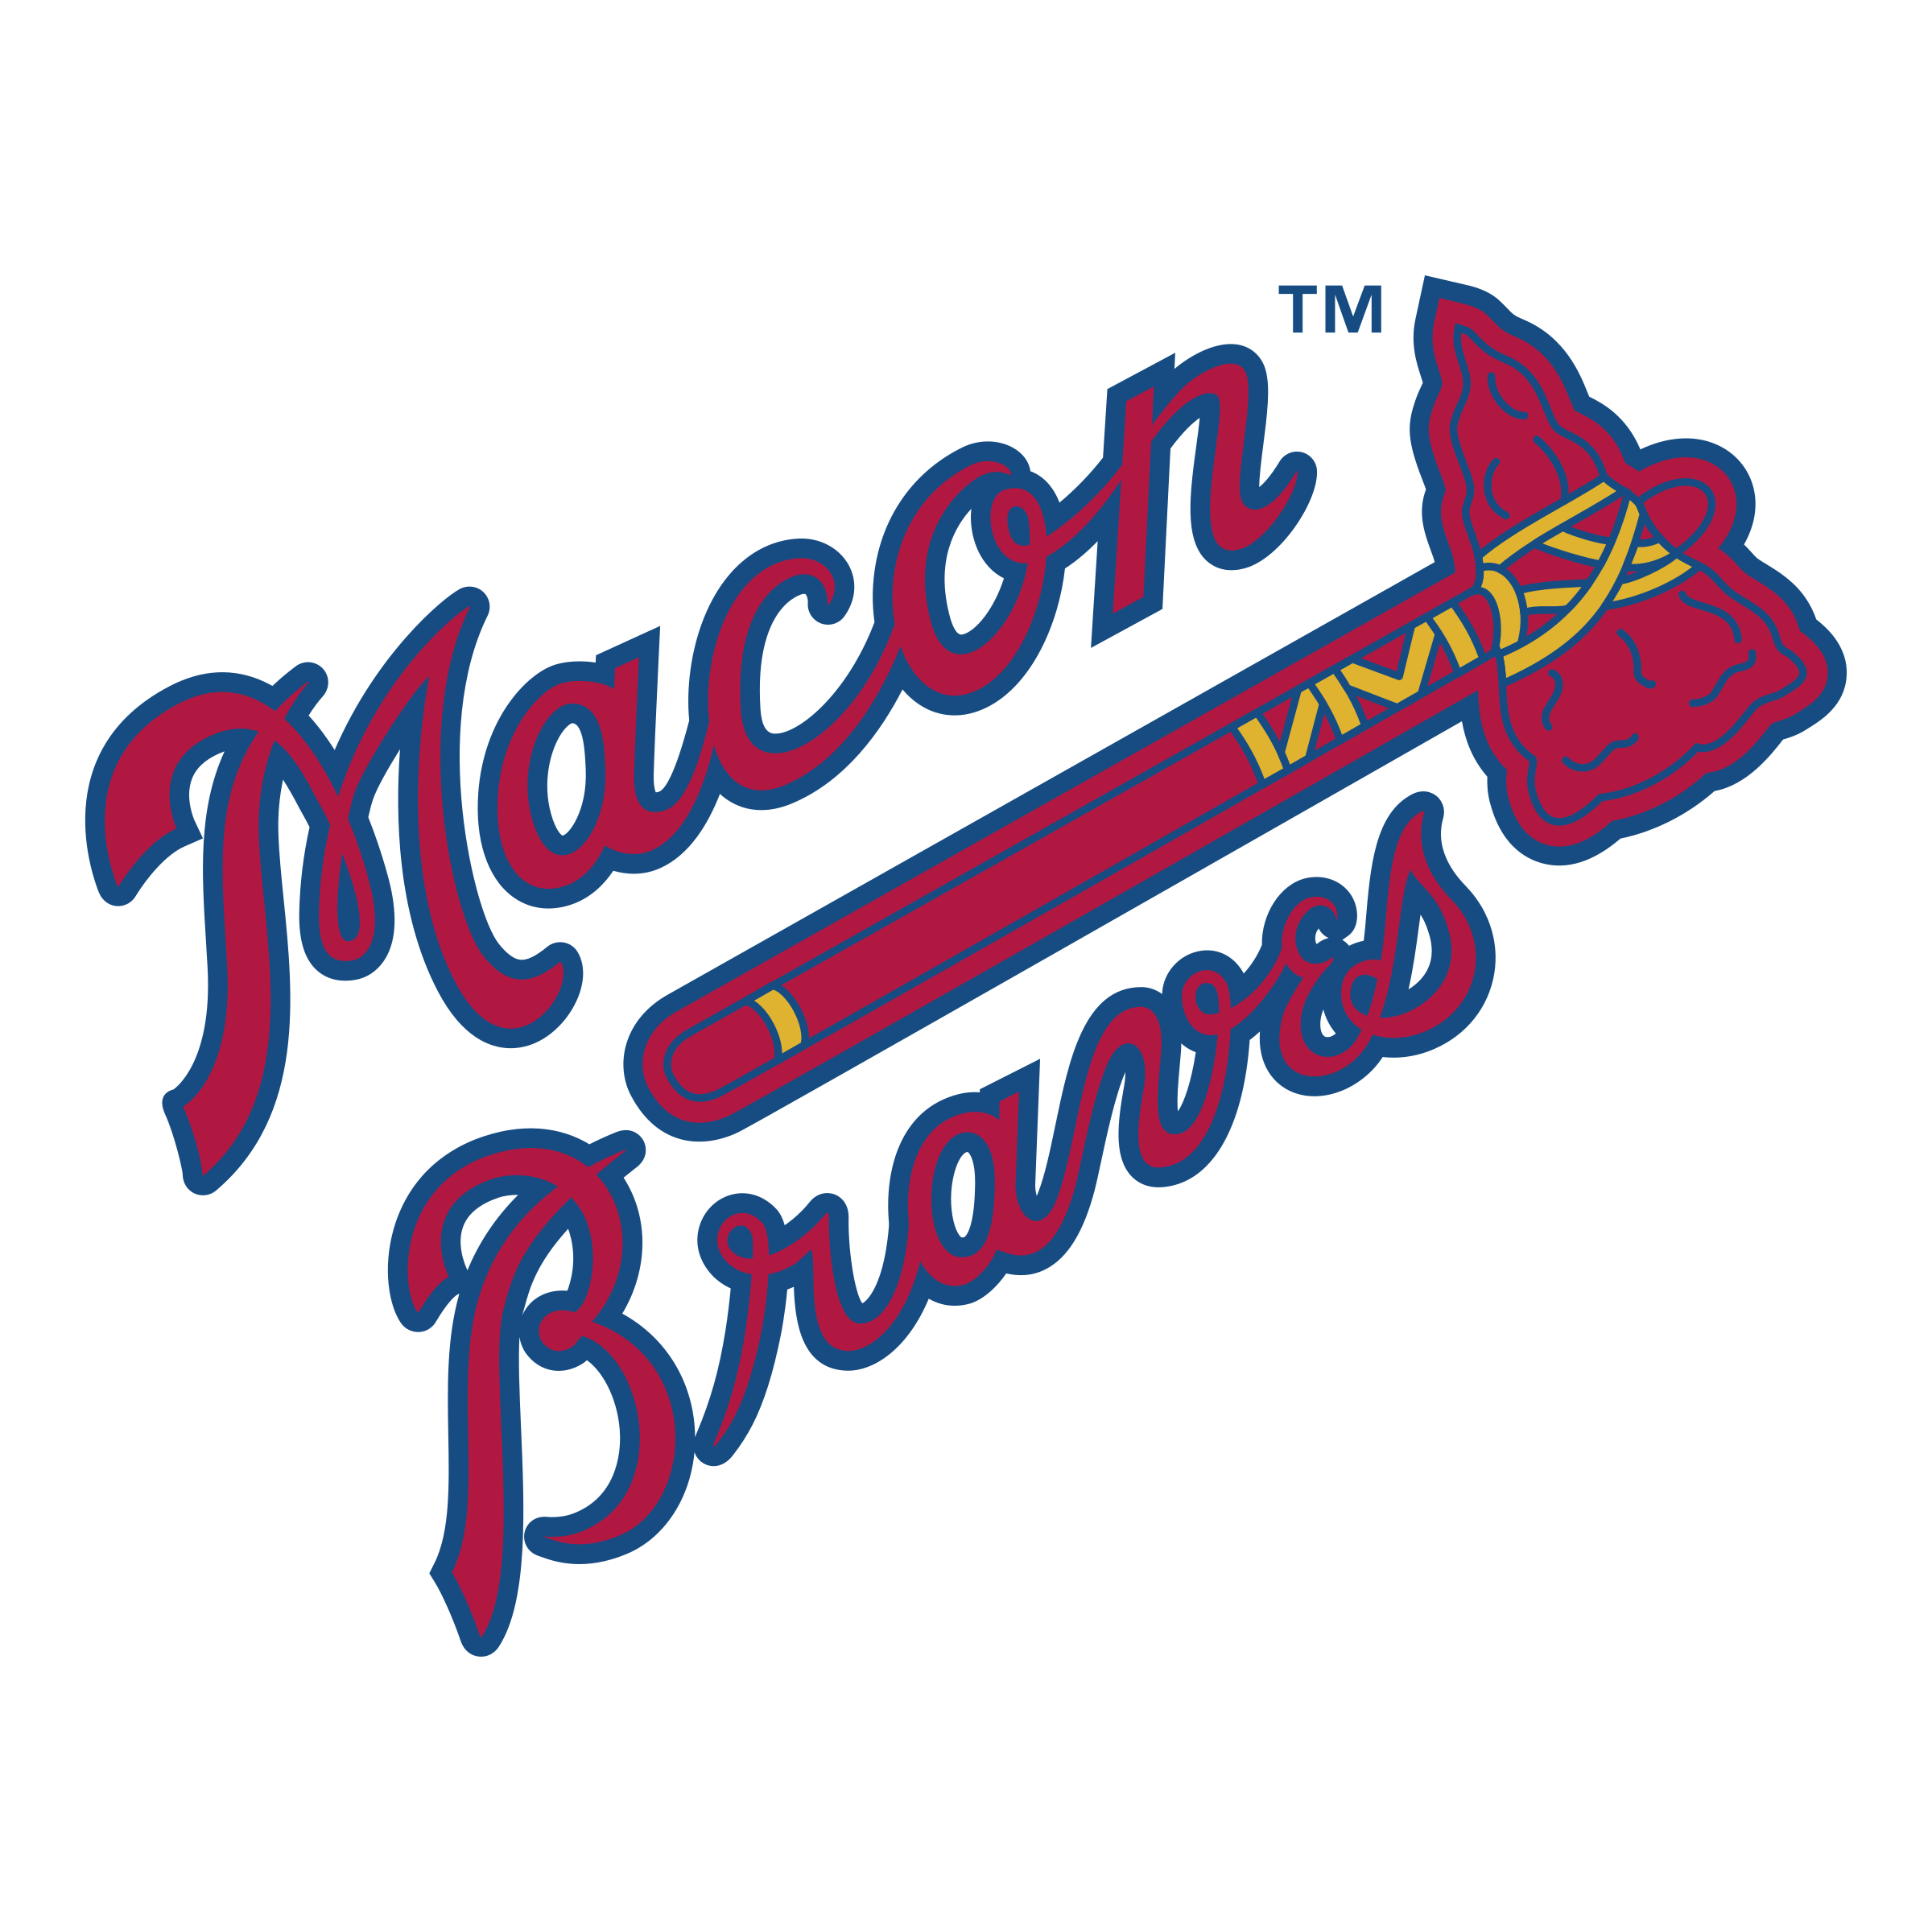 Braves Logo PNG Image Transparent Background